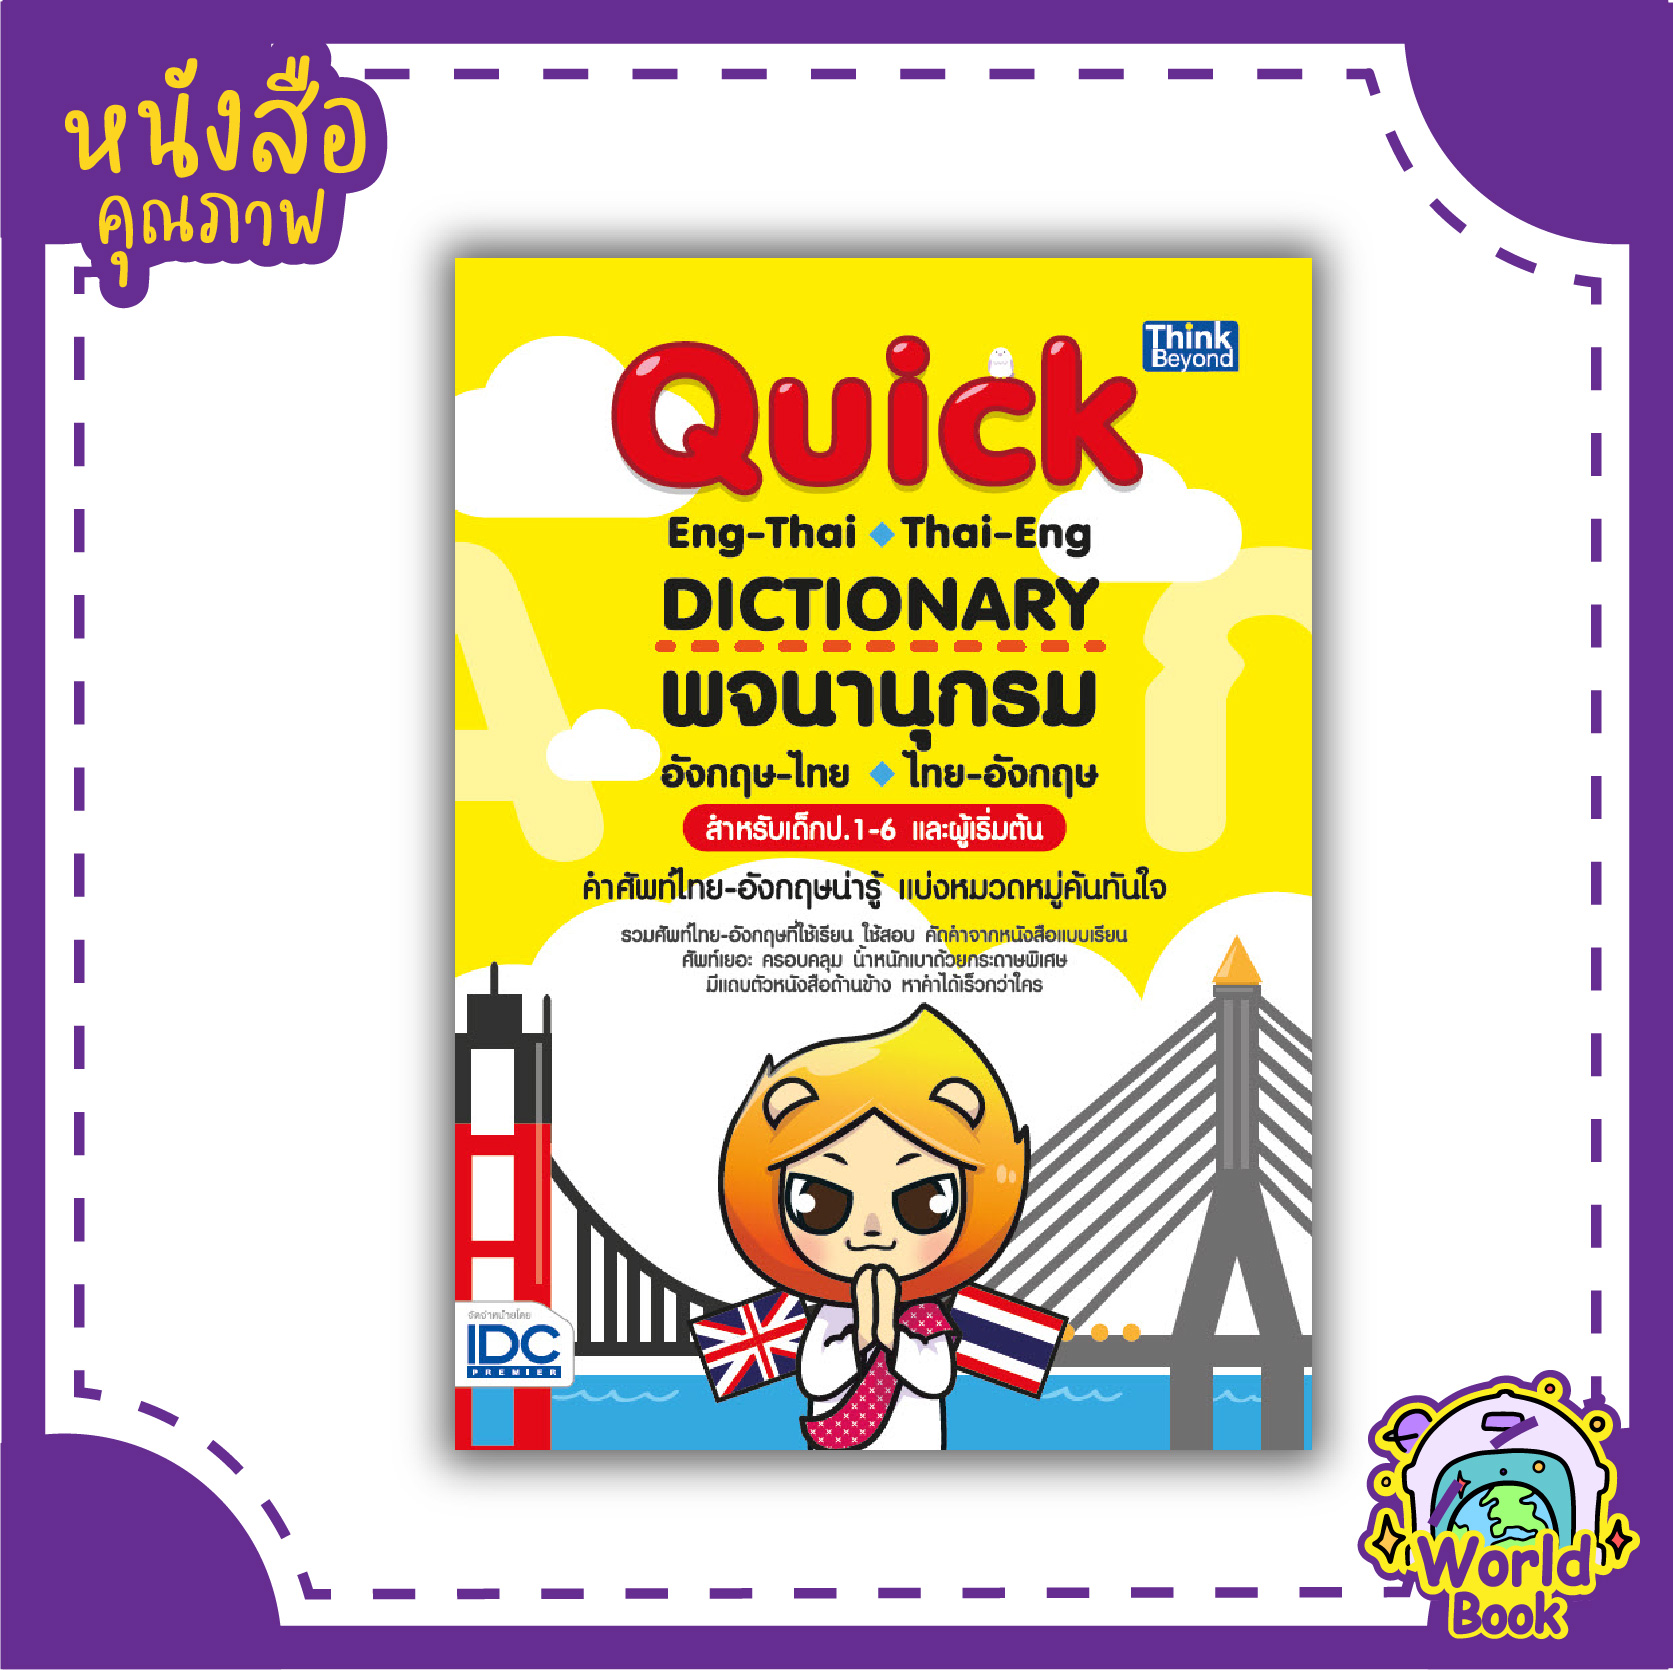 หนังสือพจนานุกรมอังกฤษ-ไทย ไทย-อังกฤษ สำหรับเด็ก ป.1-6 และผู้เริ่มต้น (Quick ENG-THAI THAI-ENG DICTIONARY)